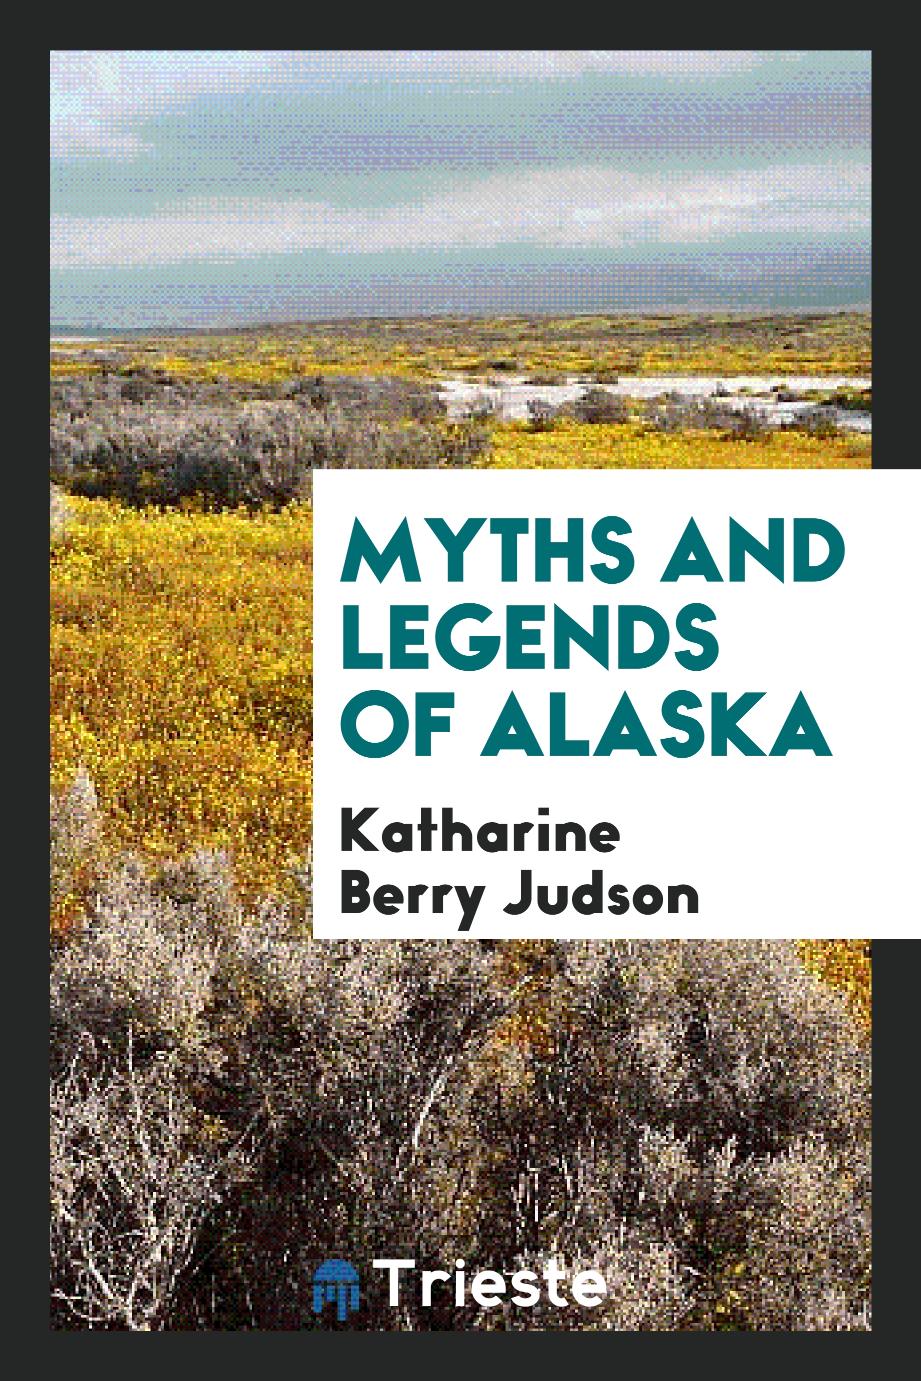 Myths and legends of Alaska